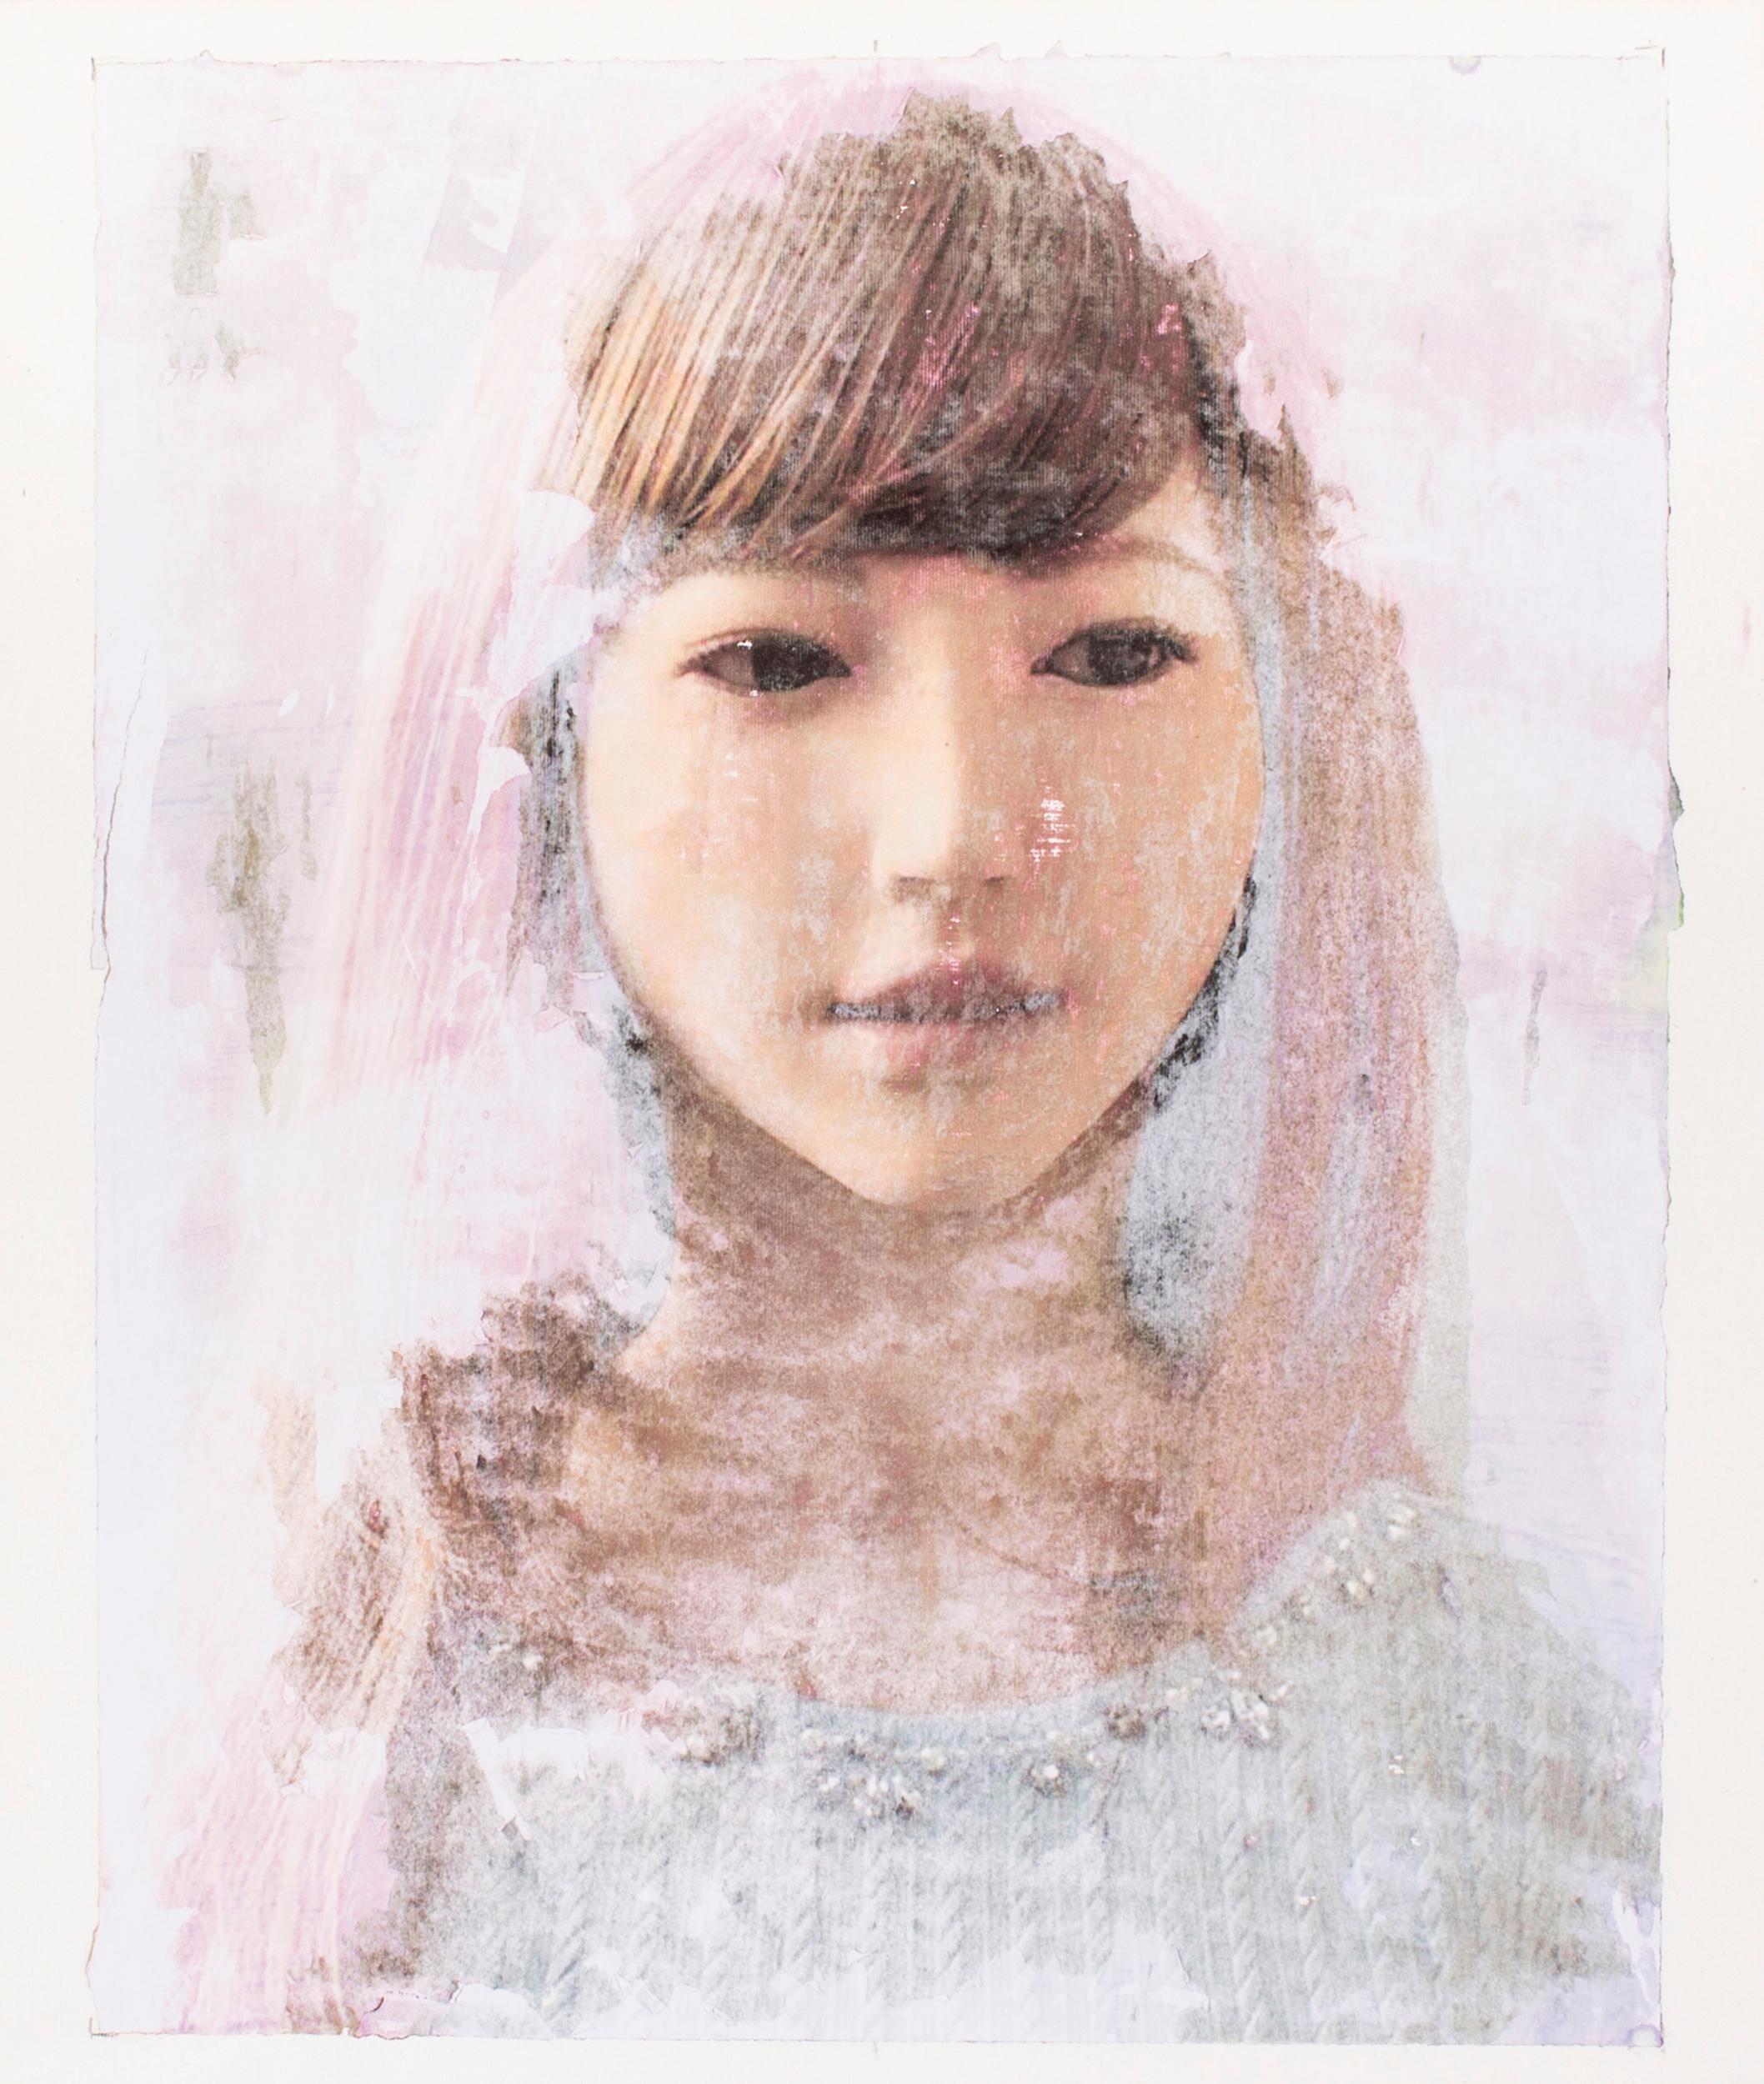 Lee Wells Portrait Painting – Porträts von Androids, Erica `1